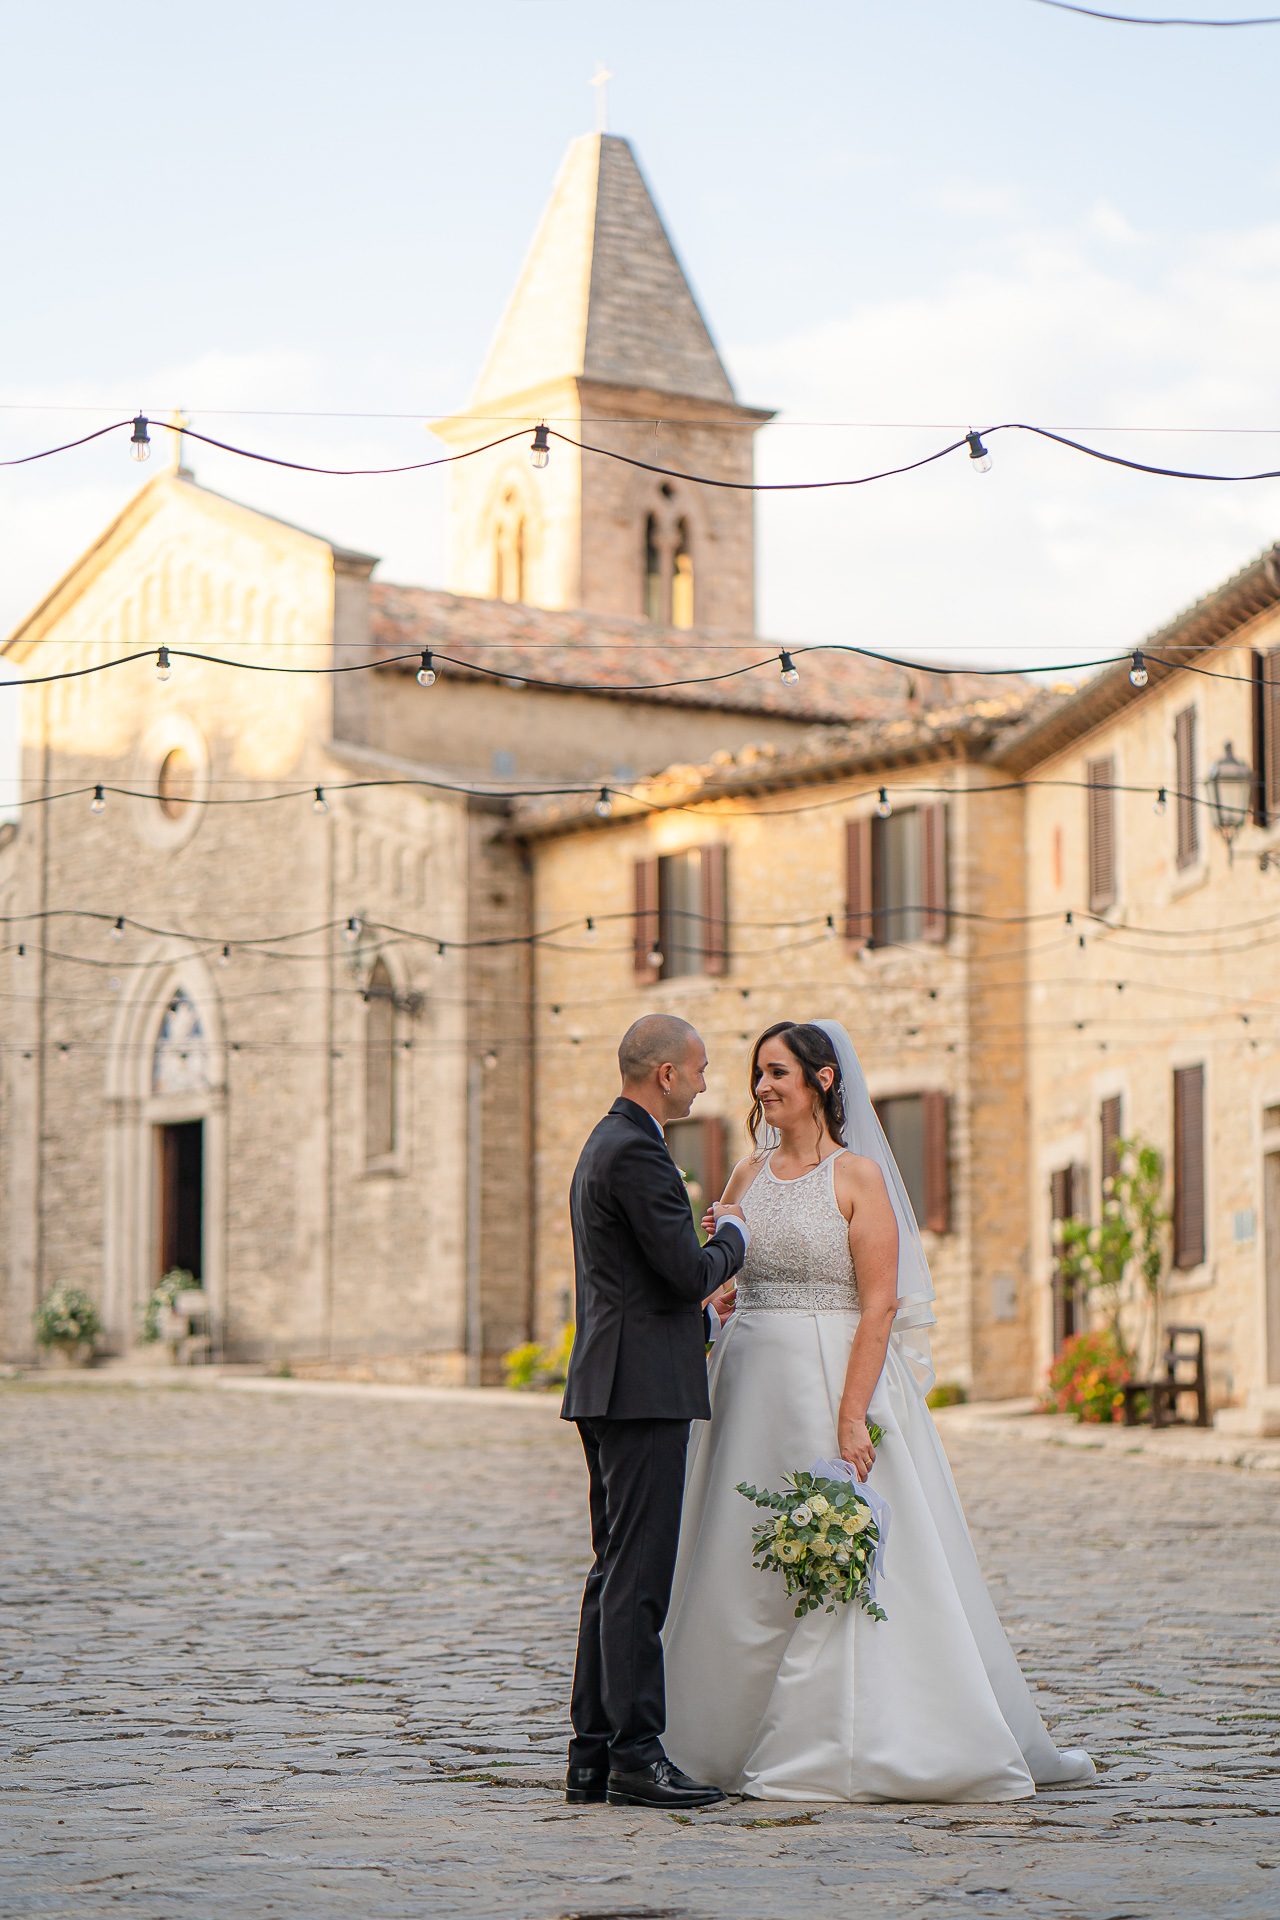 Matrimonio al Castello di Titignano